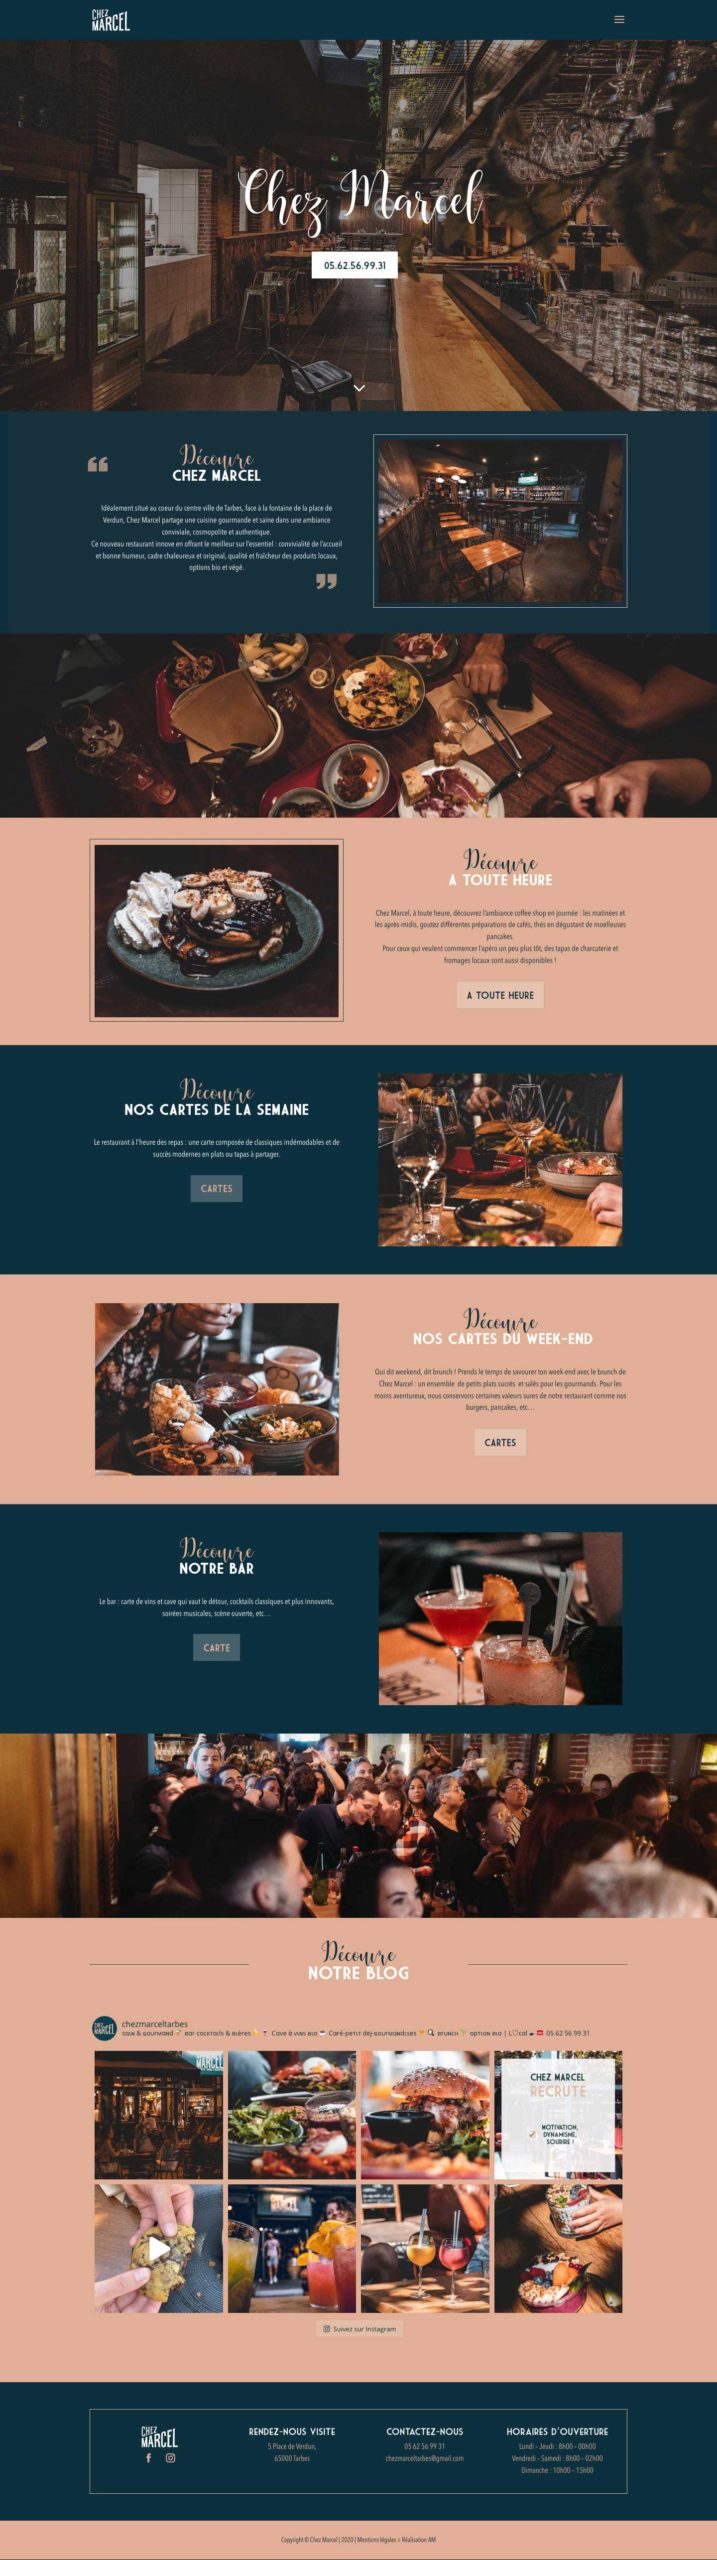 La page d'accueil du restaurant Chez Marcel à Tarbes.